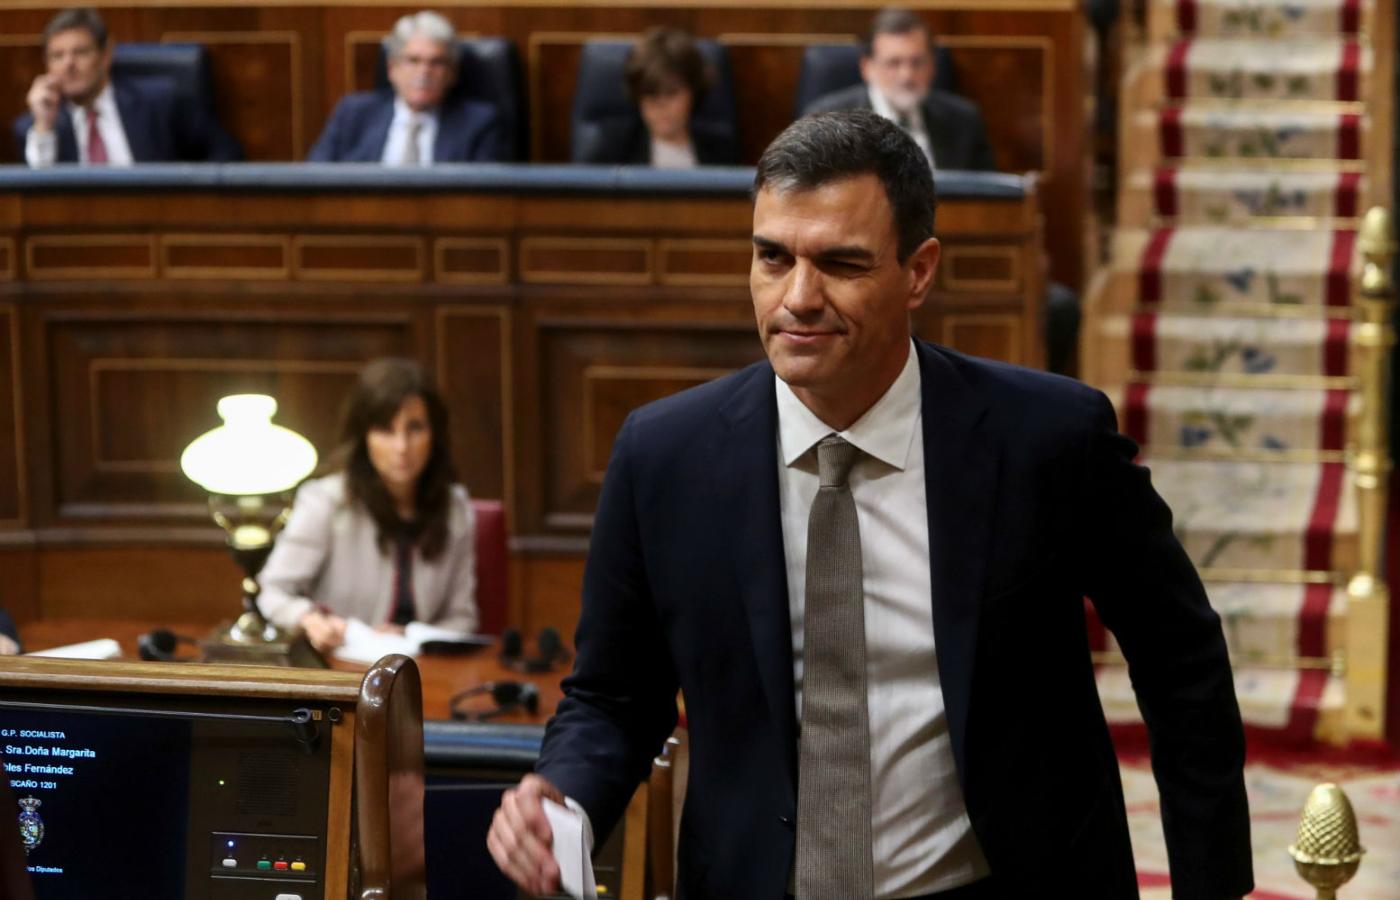 Pedro Sánchez zastąpił prawicowego premiera Mariano Rajoya.